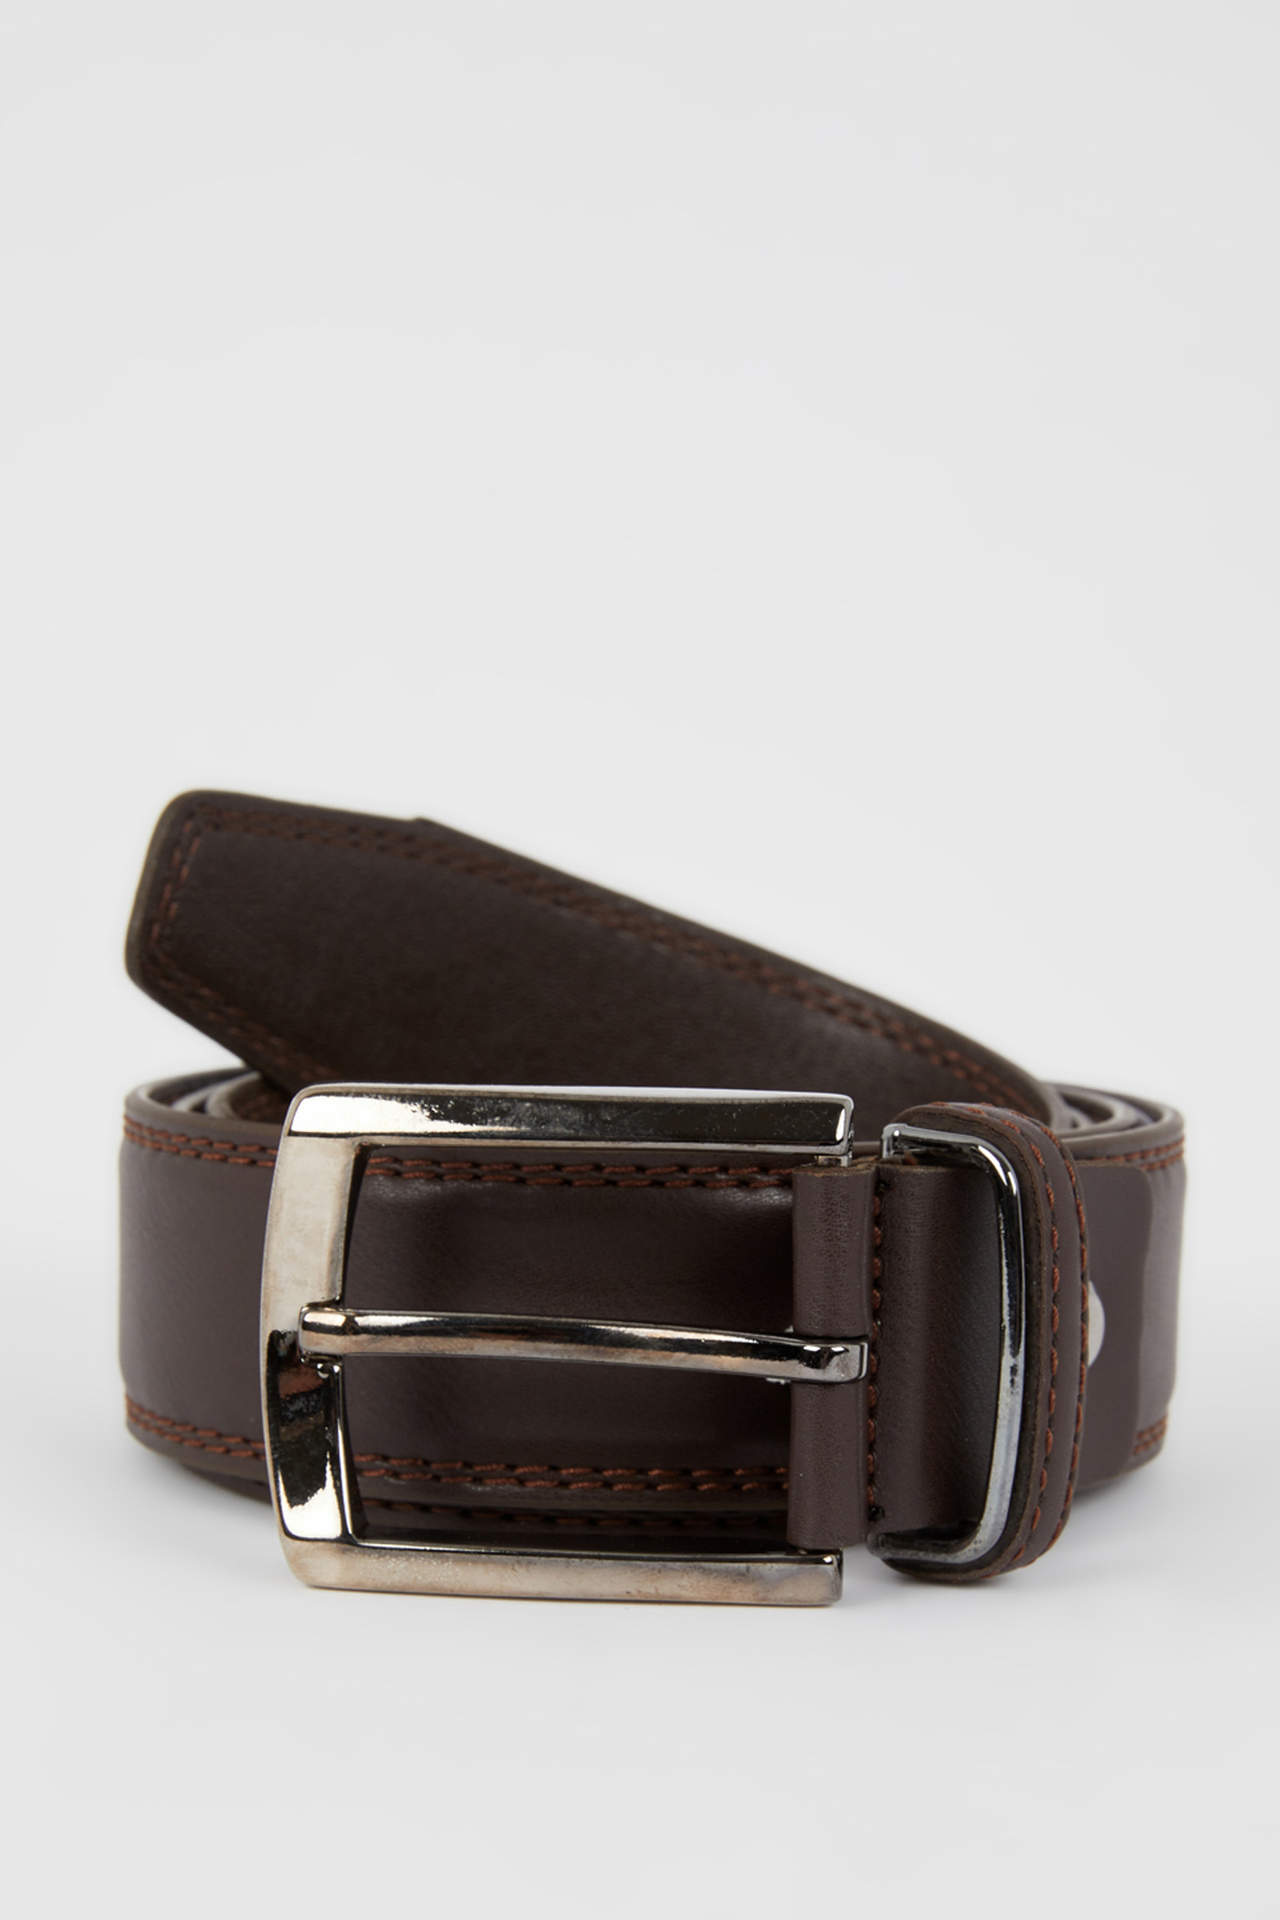 DEFACTO Men's Rectangle Buckle Leather Look Belt